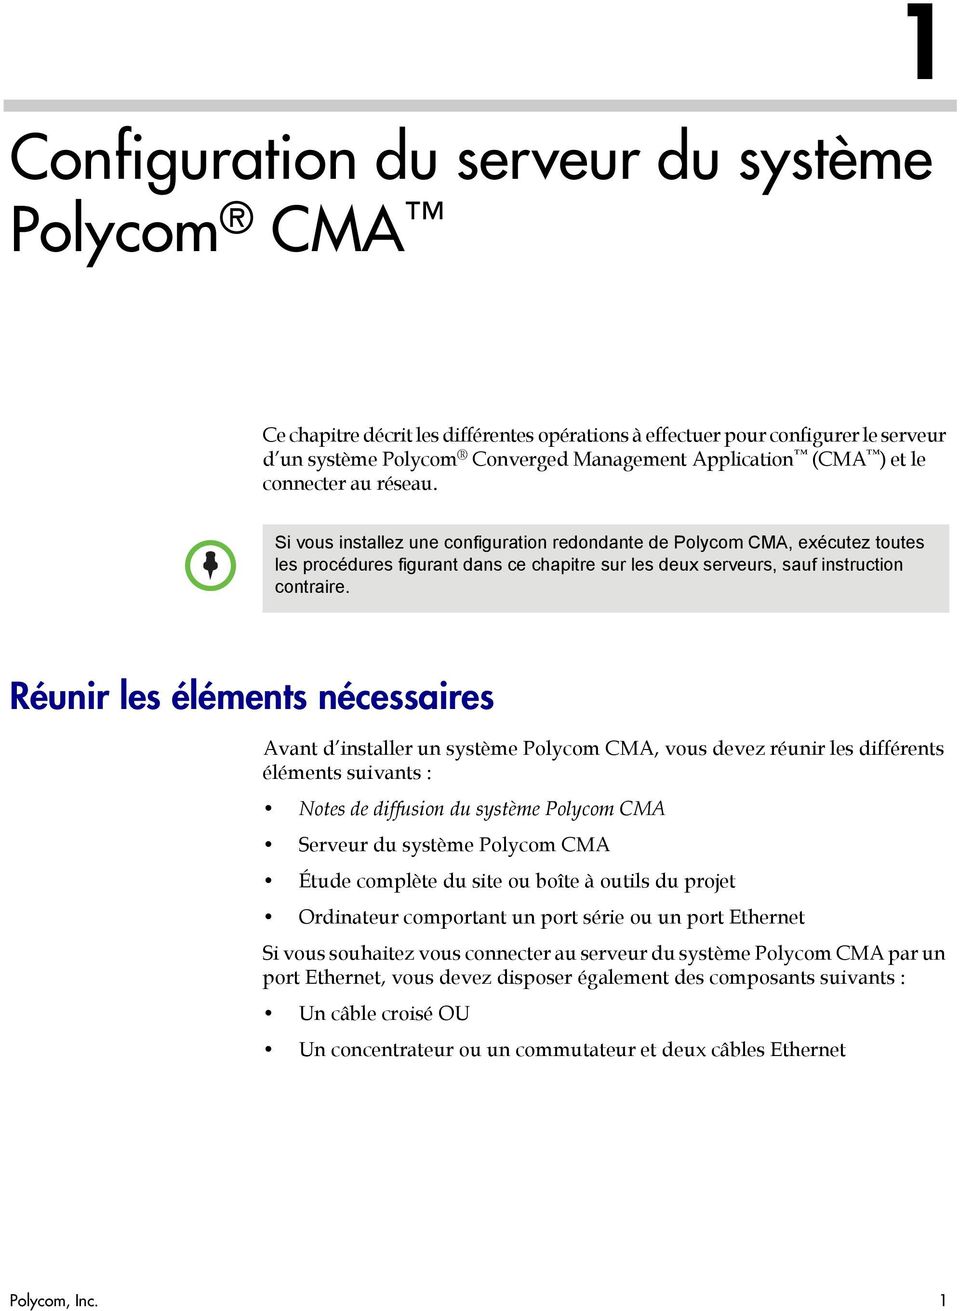 Réunir les éléments nécessaires Avant d installer un système Polycom CMA, vous devez réunir les différents éléments suivants : Notes de diffusion du système Polycom CMA Serveur du système Polycom CMA